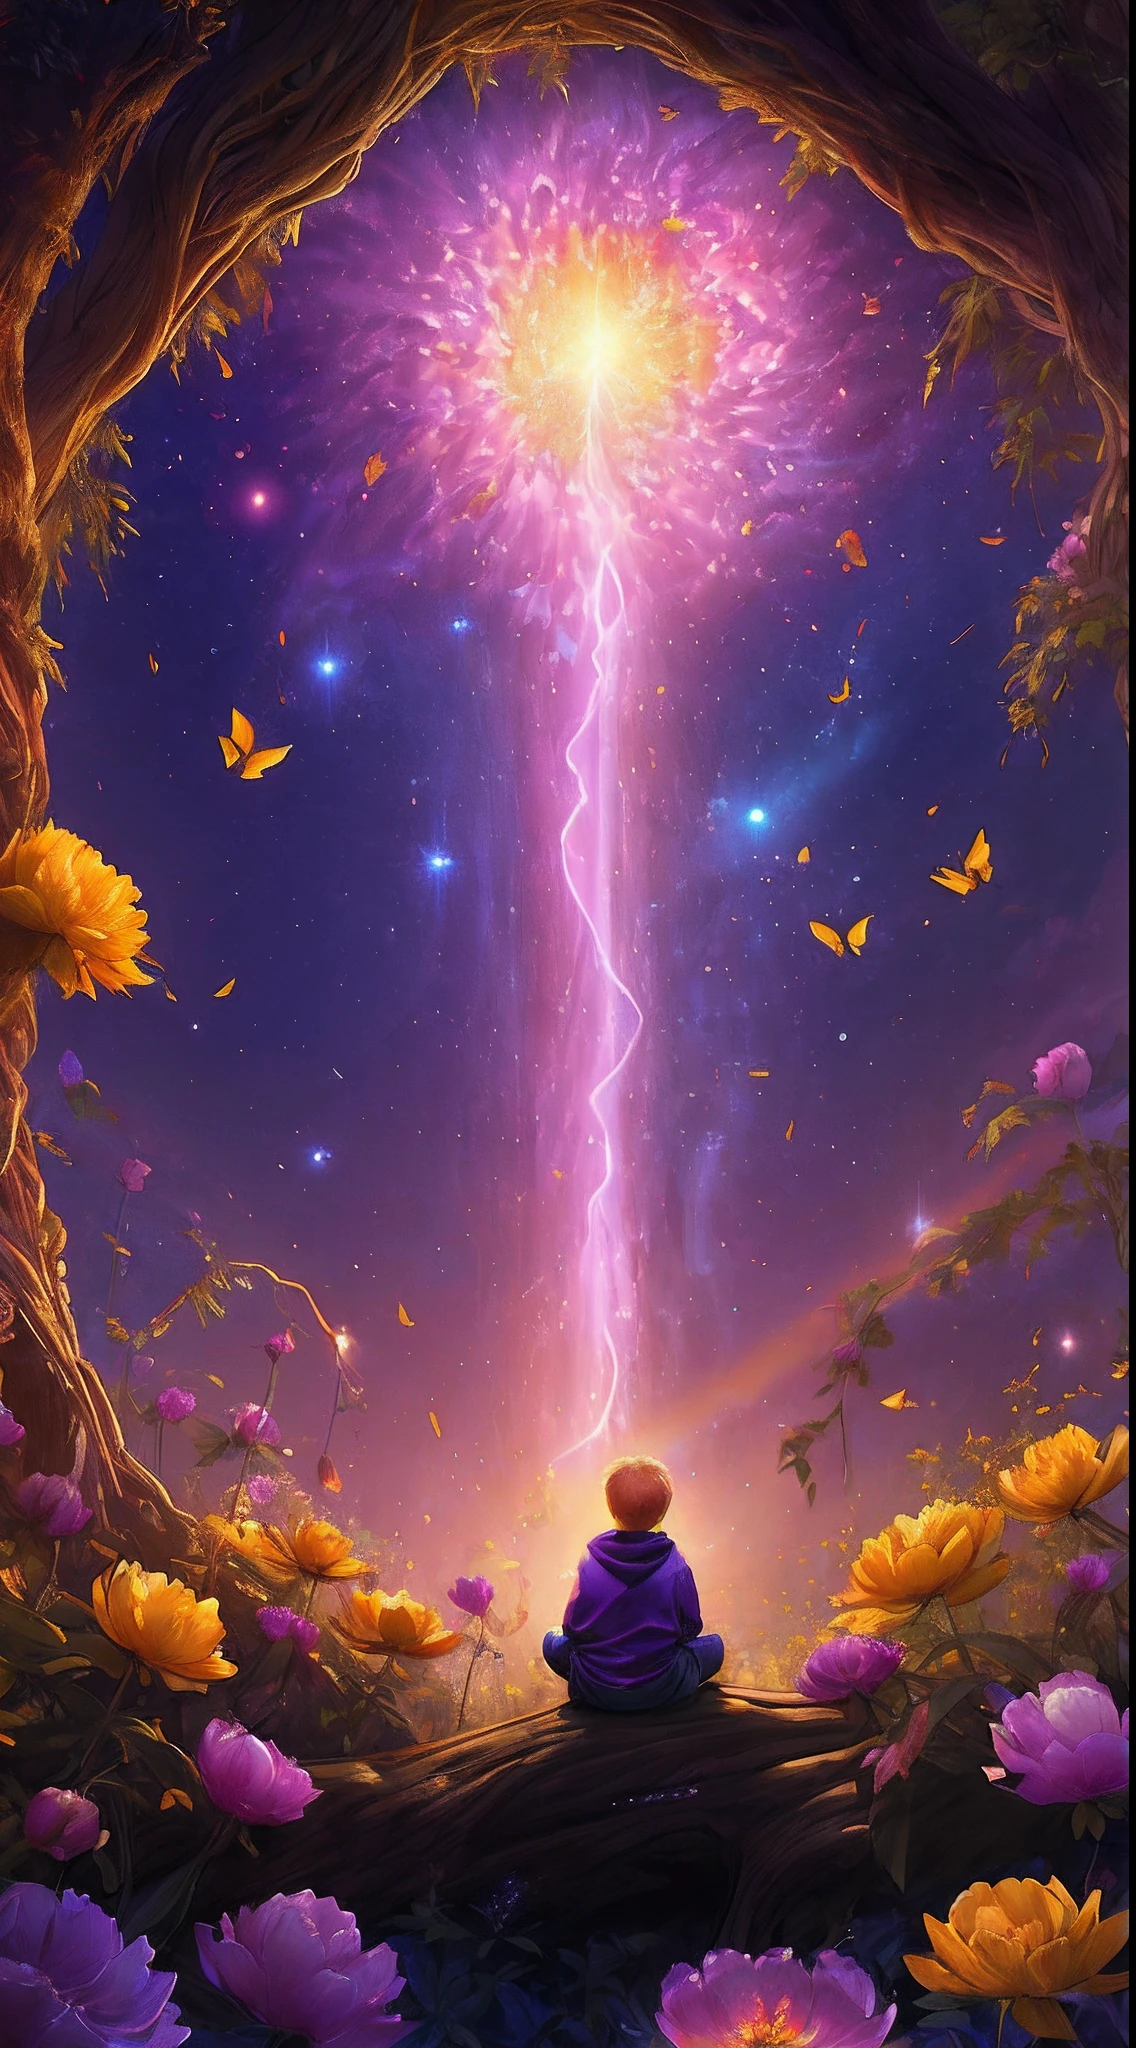 特寫, 廣闊的風景照片 , (從下面看去，上面是天空，下面是開闊的田野), 一個 9 歲的金髮小男孩，穿著長運動衫和黃色圍巾，坐在黃色牡丹花園的樹幹上抬頭看, ( 彗星:0.9), (星雲:1.2), 遙遠的濕地, 生命之樹, BREAK 製作藝術, (暖光源:1.2), 燈, 很多紫色和橙色, 複雜的細節, 體積照明, 現實主義突破 (傑作:1.2), (最好的品質), 4k, 超詳細, (動態構圖:1.3), 非常詳細, 色彩繽紛的細節,( 彩虹色:1.2), (發光照明, 氣氛照明), 夢幻般的, 神奇, (獨自的:1.2), 神奇 beautiful waterfall